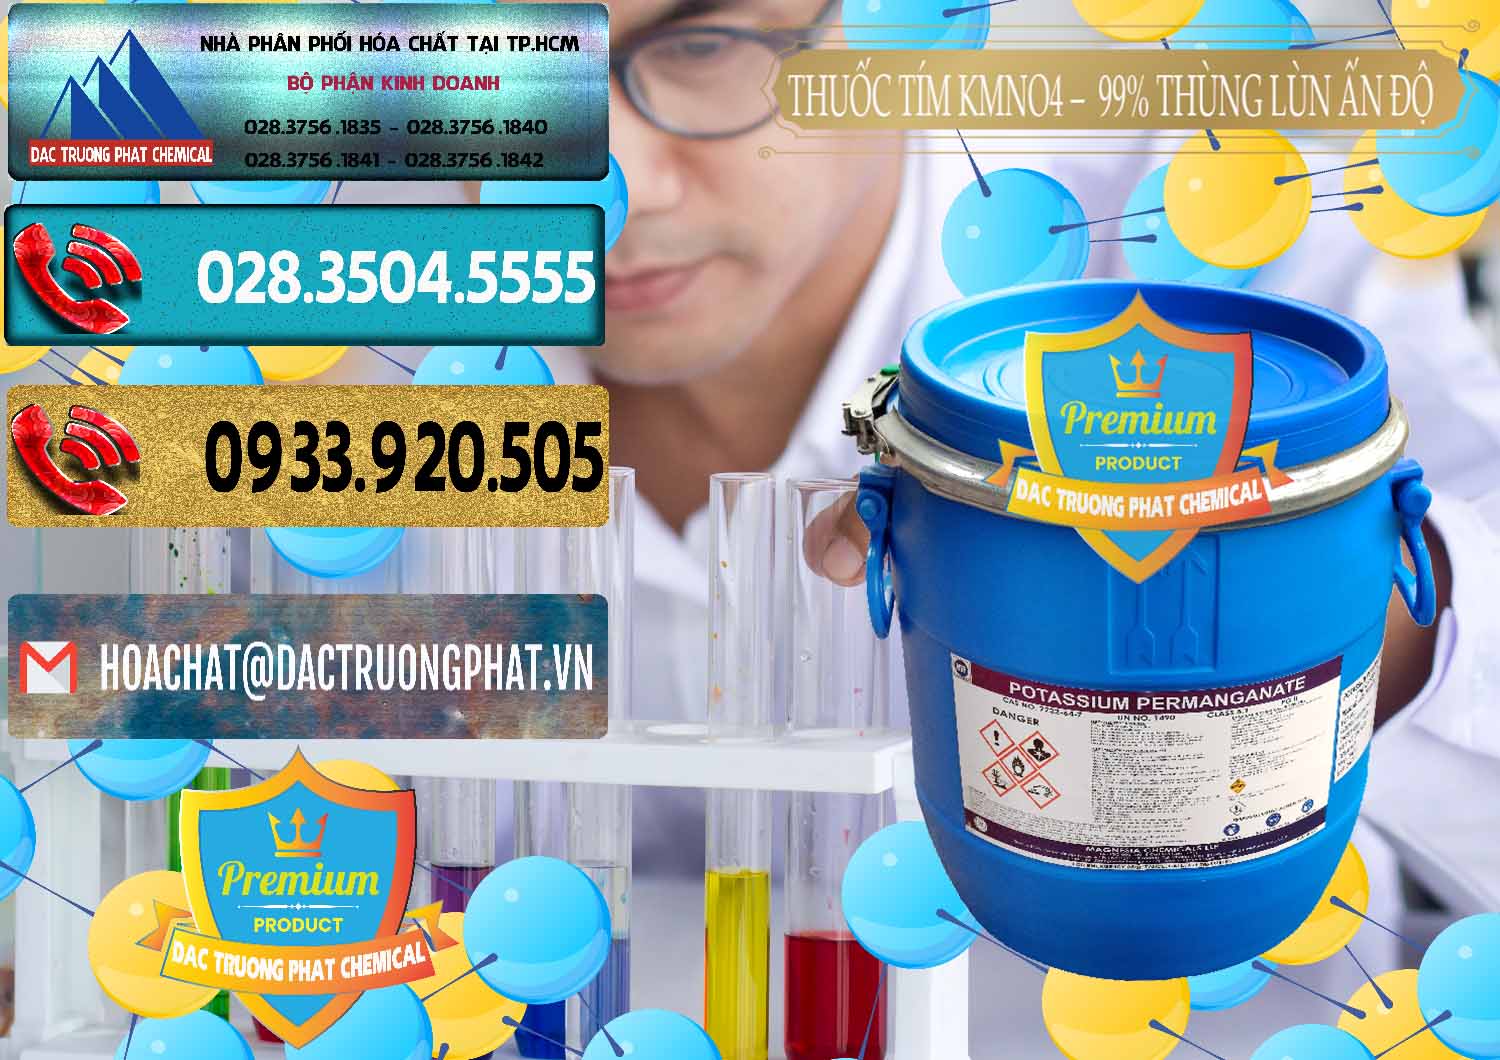 Công ty cung cấp ( bán ) Thuốc Tím - KMNO4 Thùng Lùn 99% Magnesia Chemicals Ấn Độ India - 0165 - Đơn vị chuyên cung cấp _ kinh doanh hóa chất tại TP.HCM - hoachatdetnhuom.com